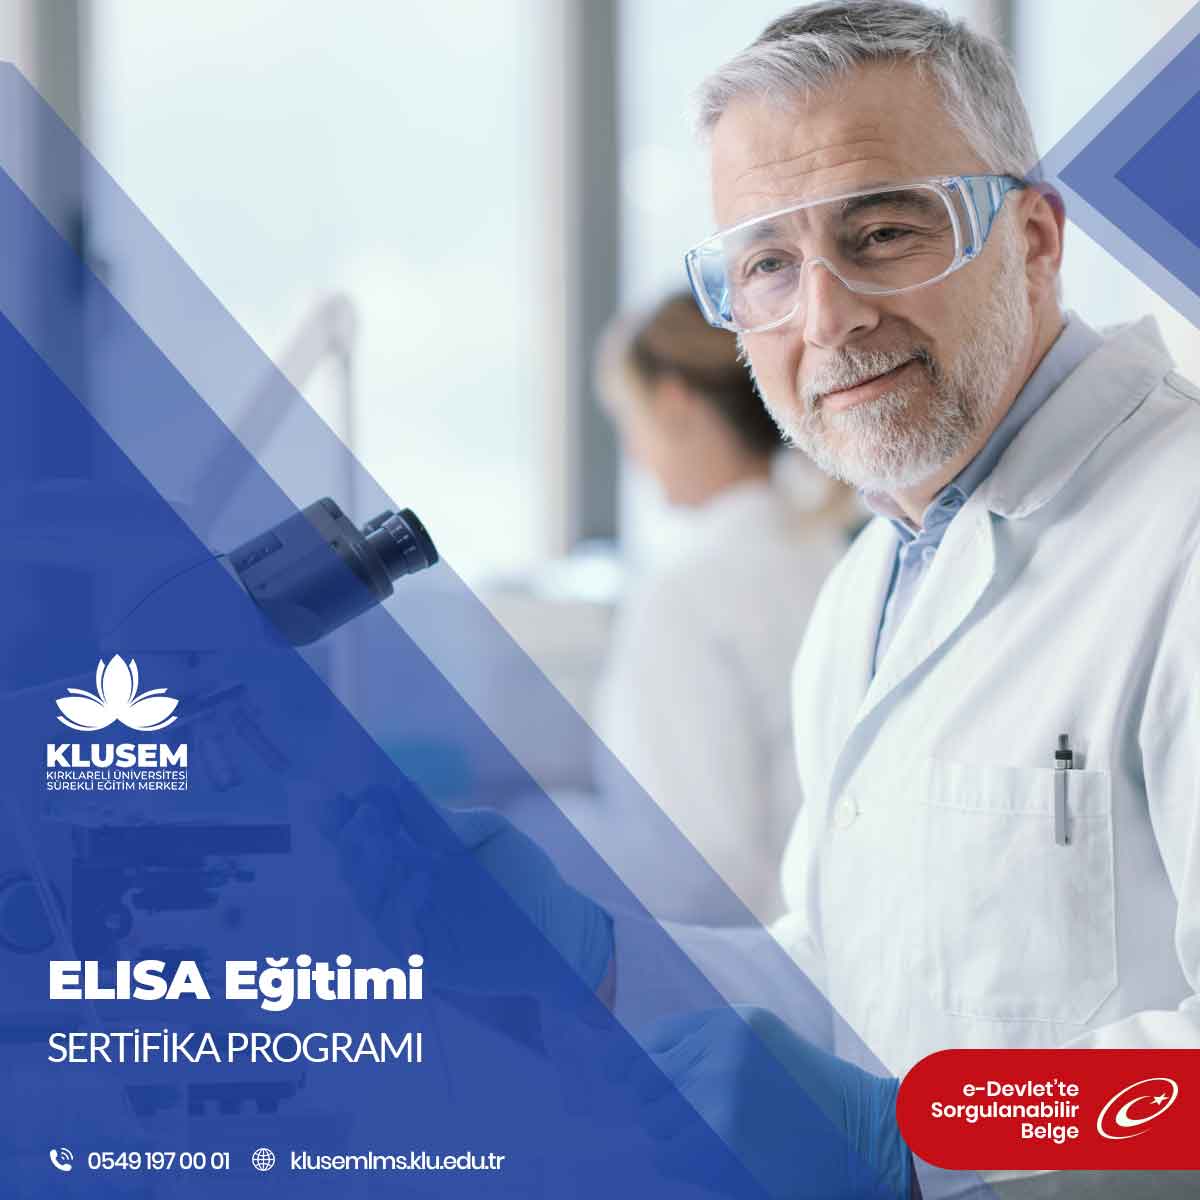 ELISA Eğitimi, katılımcılara ELISA tekniğini anlatma, uygulama ve yorumlama yetenekleri kazandırmayı amaçlayan bir eğitim programıdır.